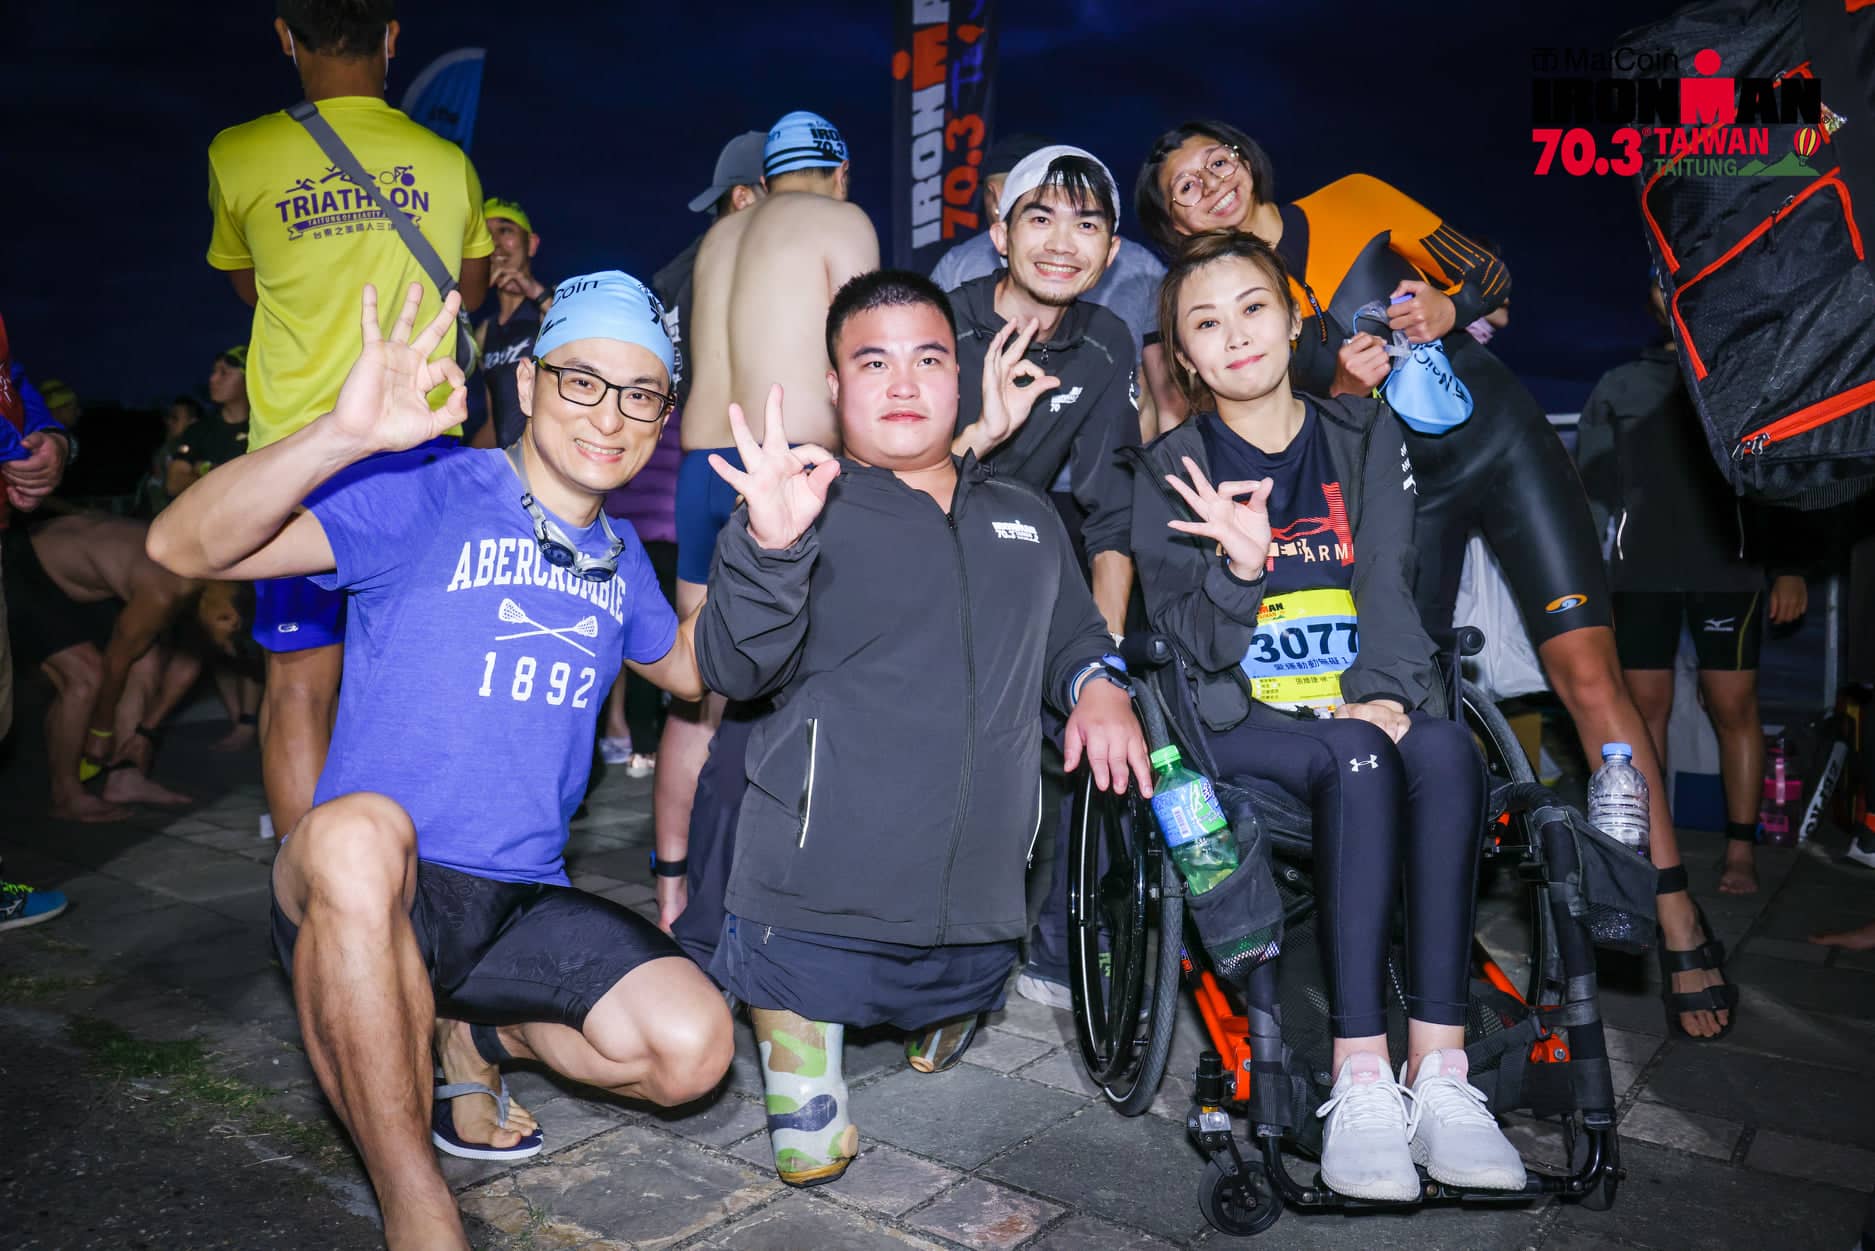 推動適應體育與「愛運動動無礙」的師大團隊夥伴們，紛紛組團參加鐵人三項等運動賽事，以身體力行彰顯身障者們對運動的熱愛與嚮往。圖片來源：LAVA台灣鐵人三項公司